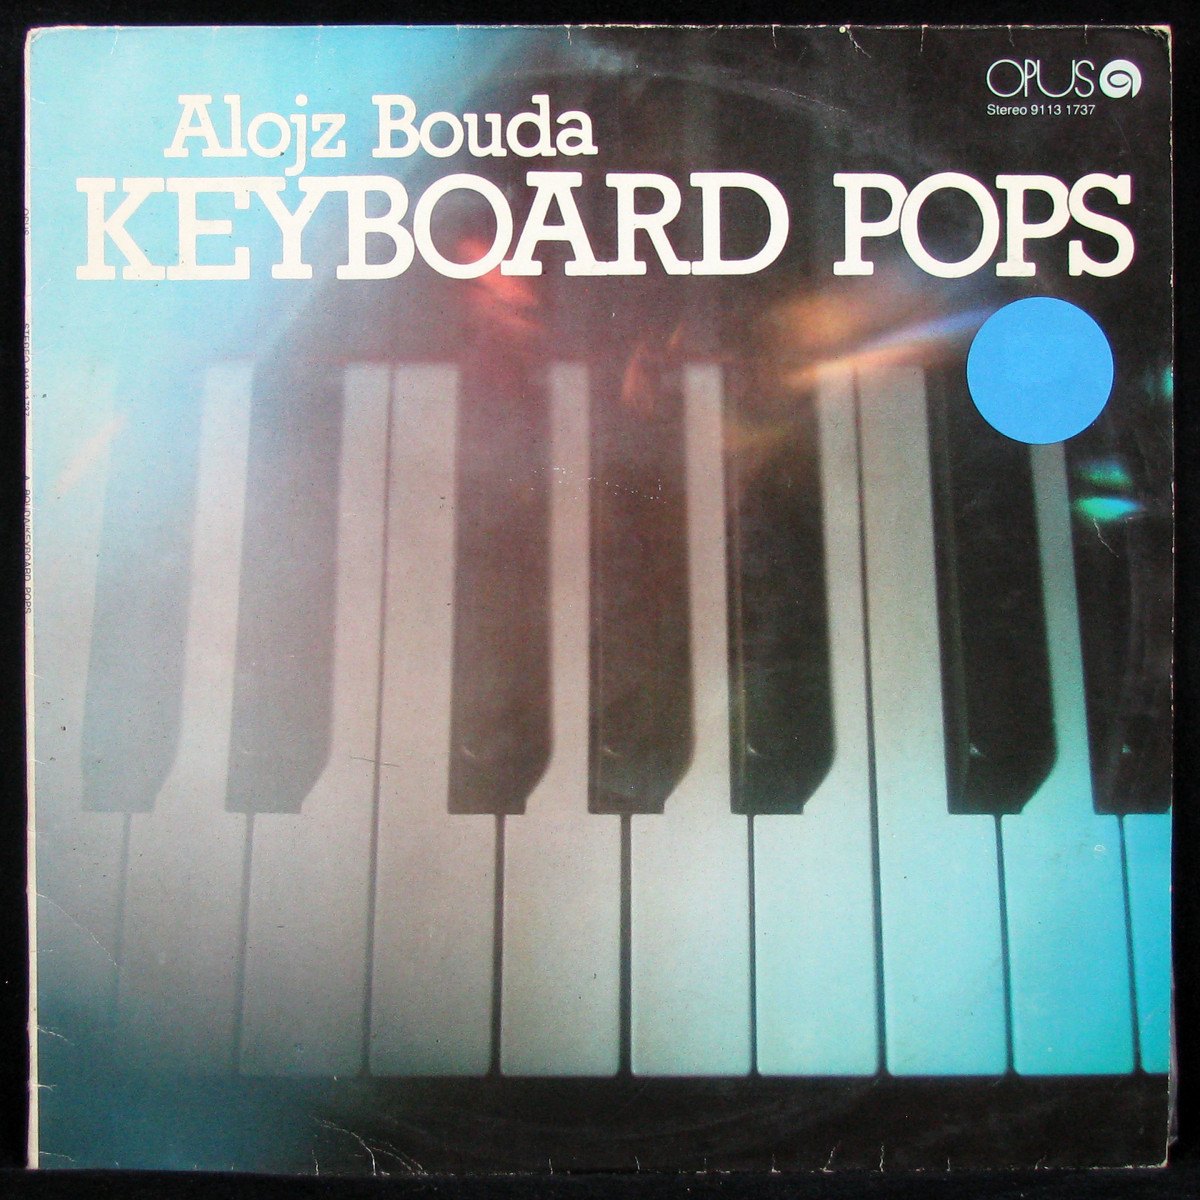 Keyboards Pops